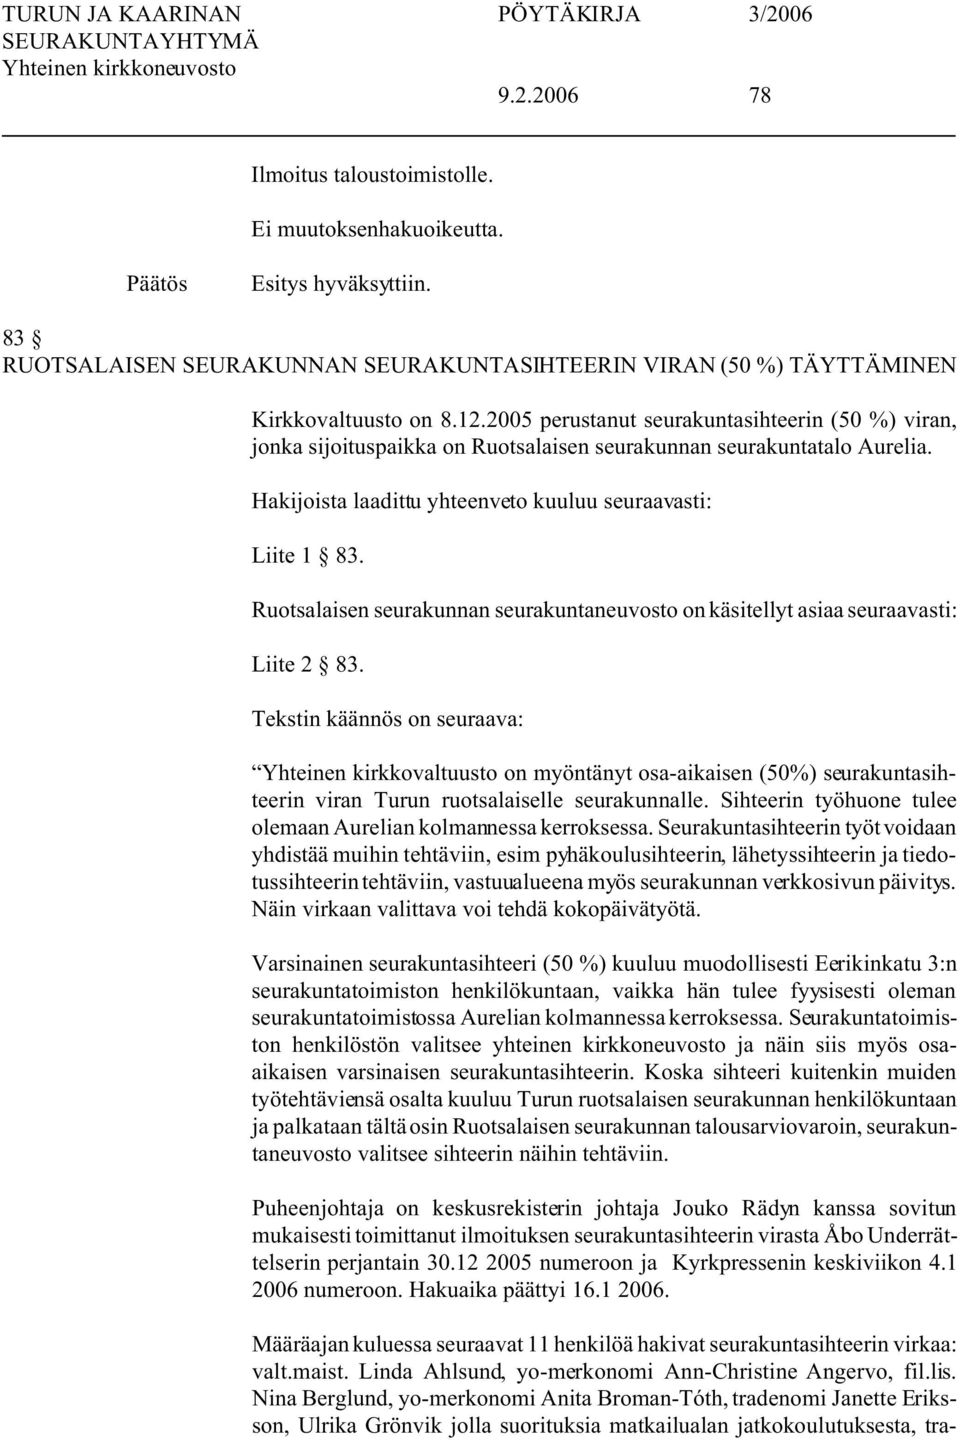 Ruotsalaisen seurakunnan seurakuntaneuvosto on käsitellyt asiaa seuraavasti: Liite 2 83.